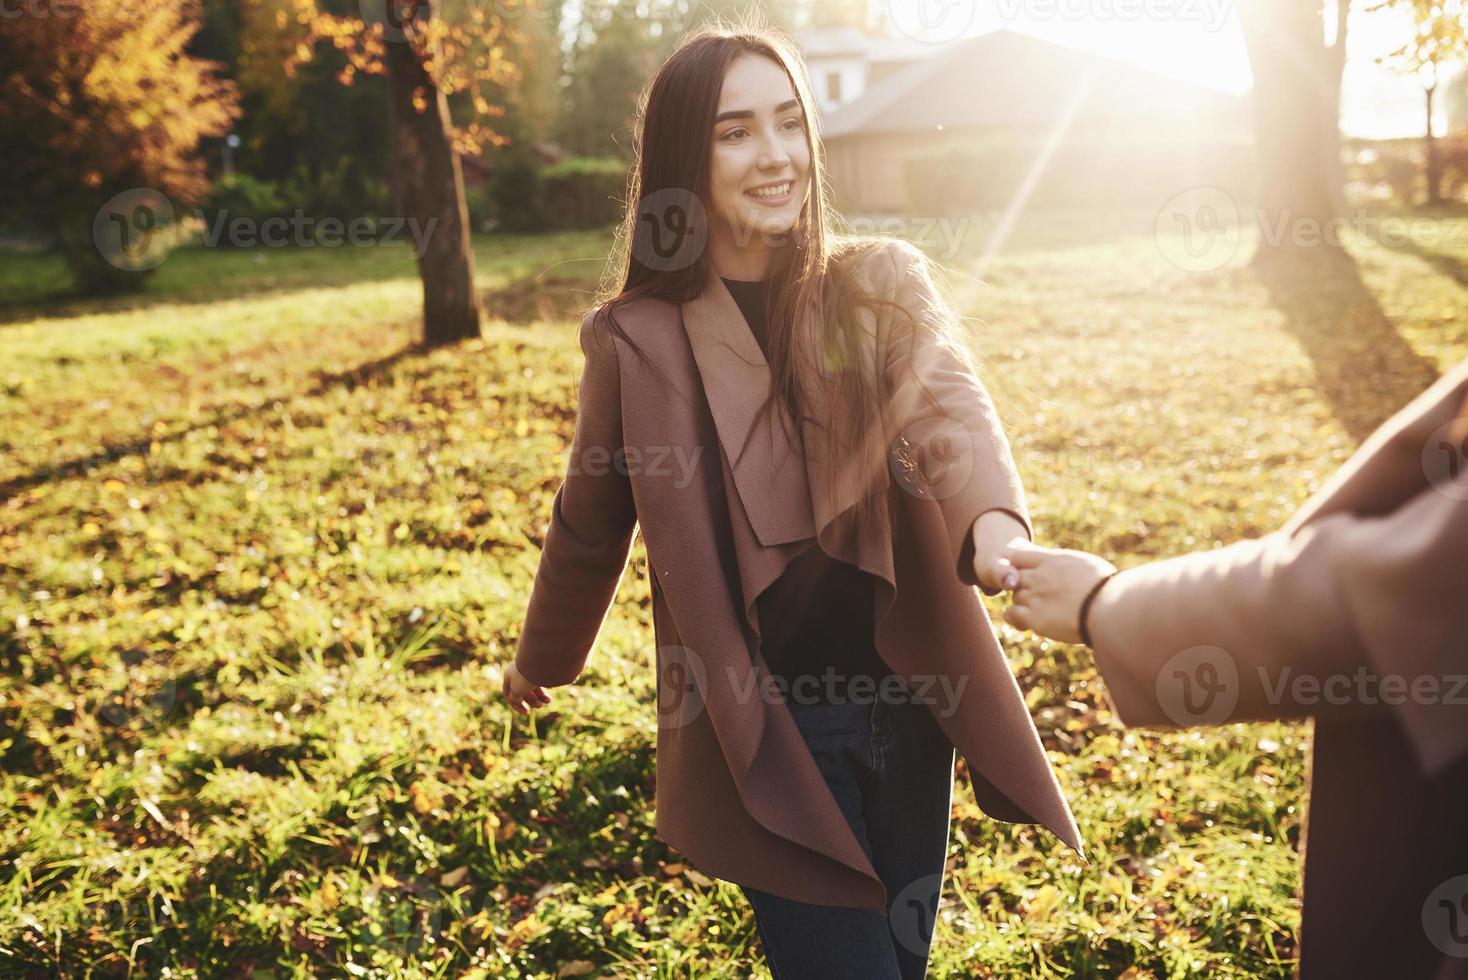 jovem, sorridente e linda menina morena está segurando a mão de alguém enquanto caminha no parque ensolarado de outono em fundo desfocado foto